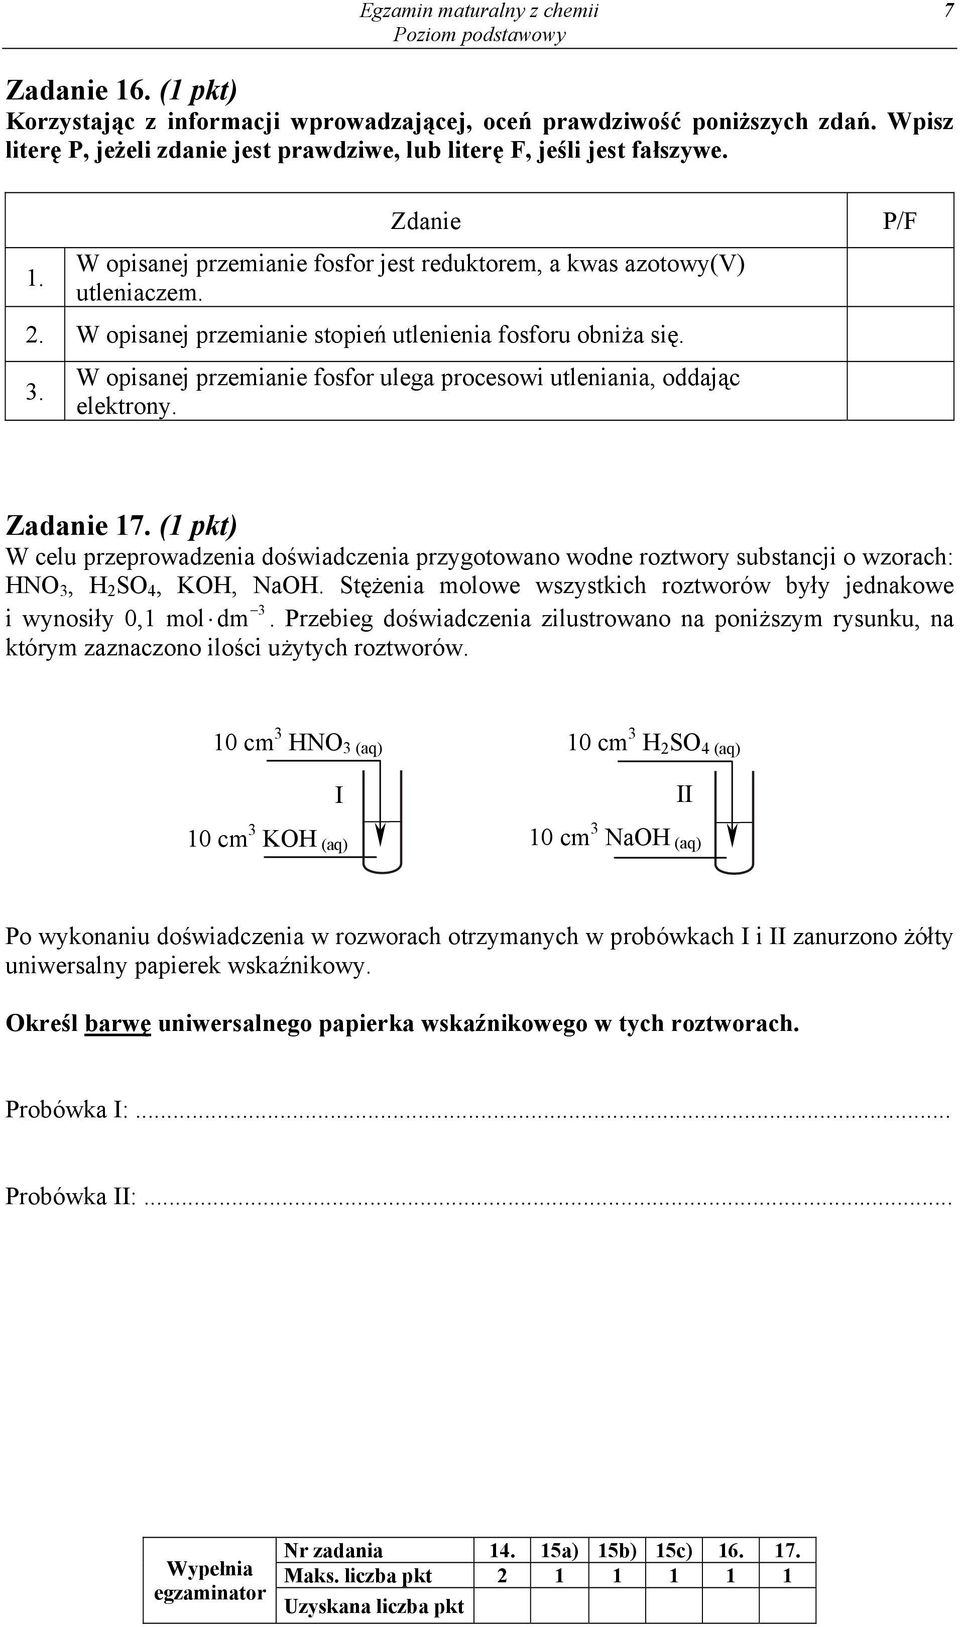 W opisanej przemianie stopień utlenienia fosforu obniża się. 3. W opisanej przemianie fosfor ulega procesowi utleniania, oddając elektrony. P/F Zadanie 17.